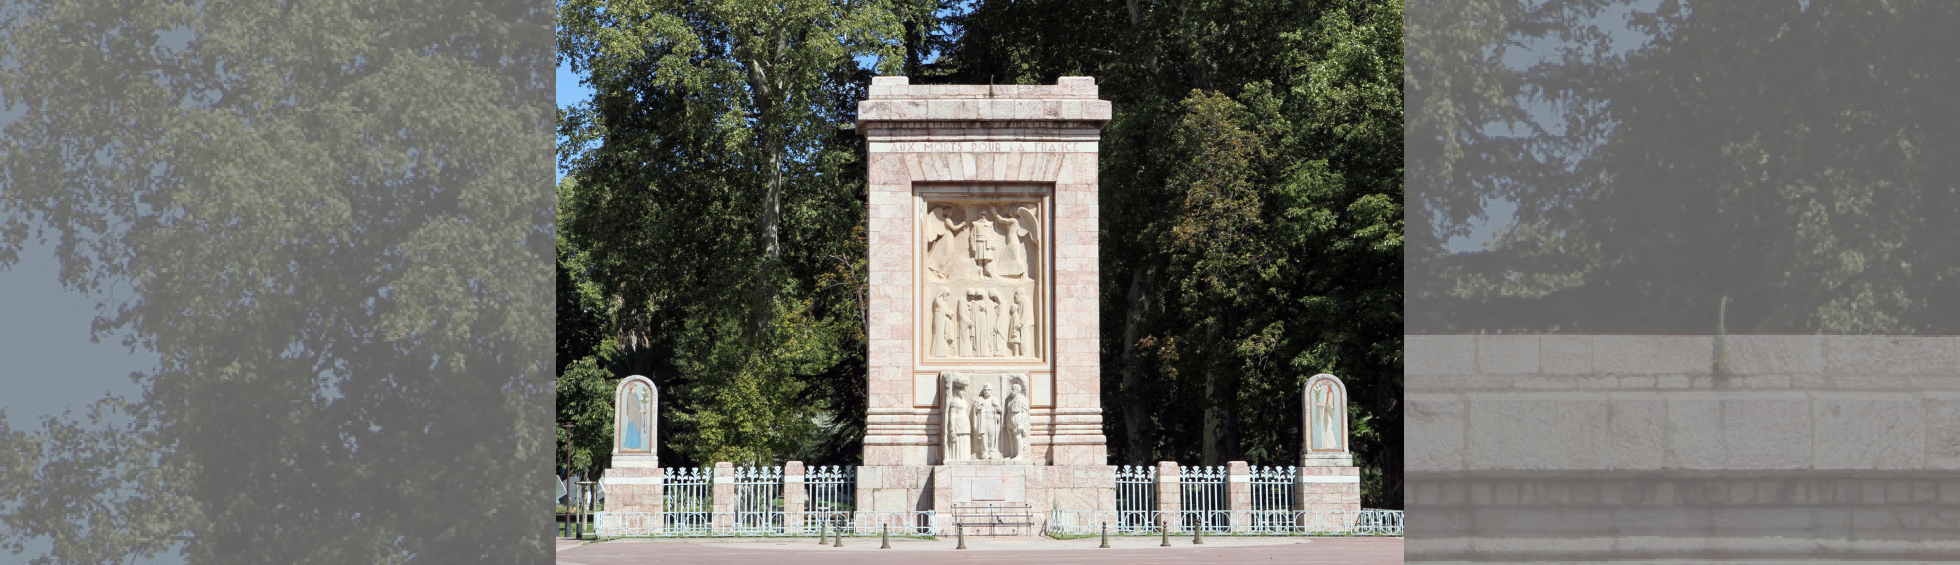 Les monuments aux morts de Gustave Violet de Perpignan et Barcelone